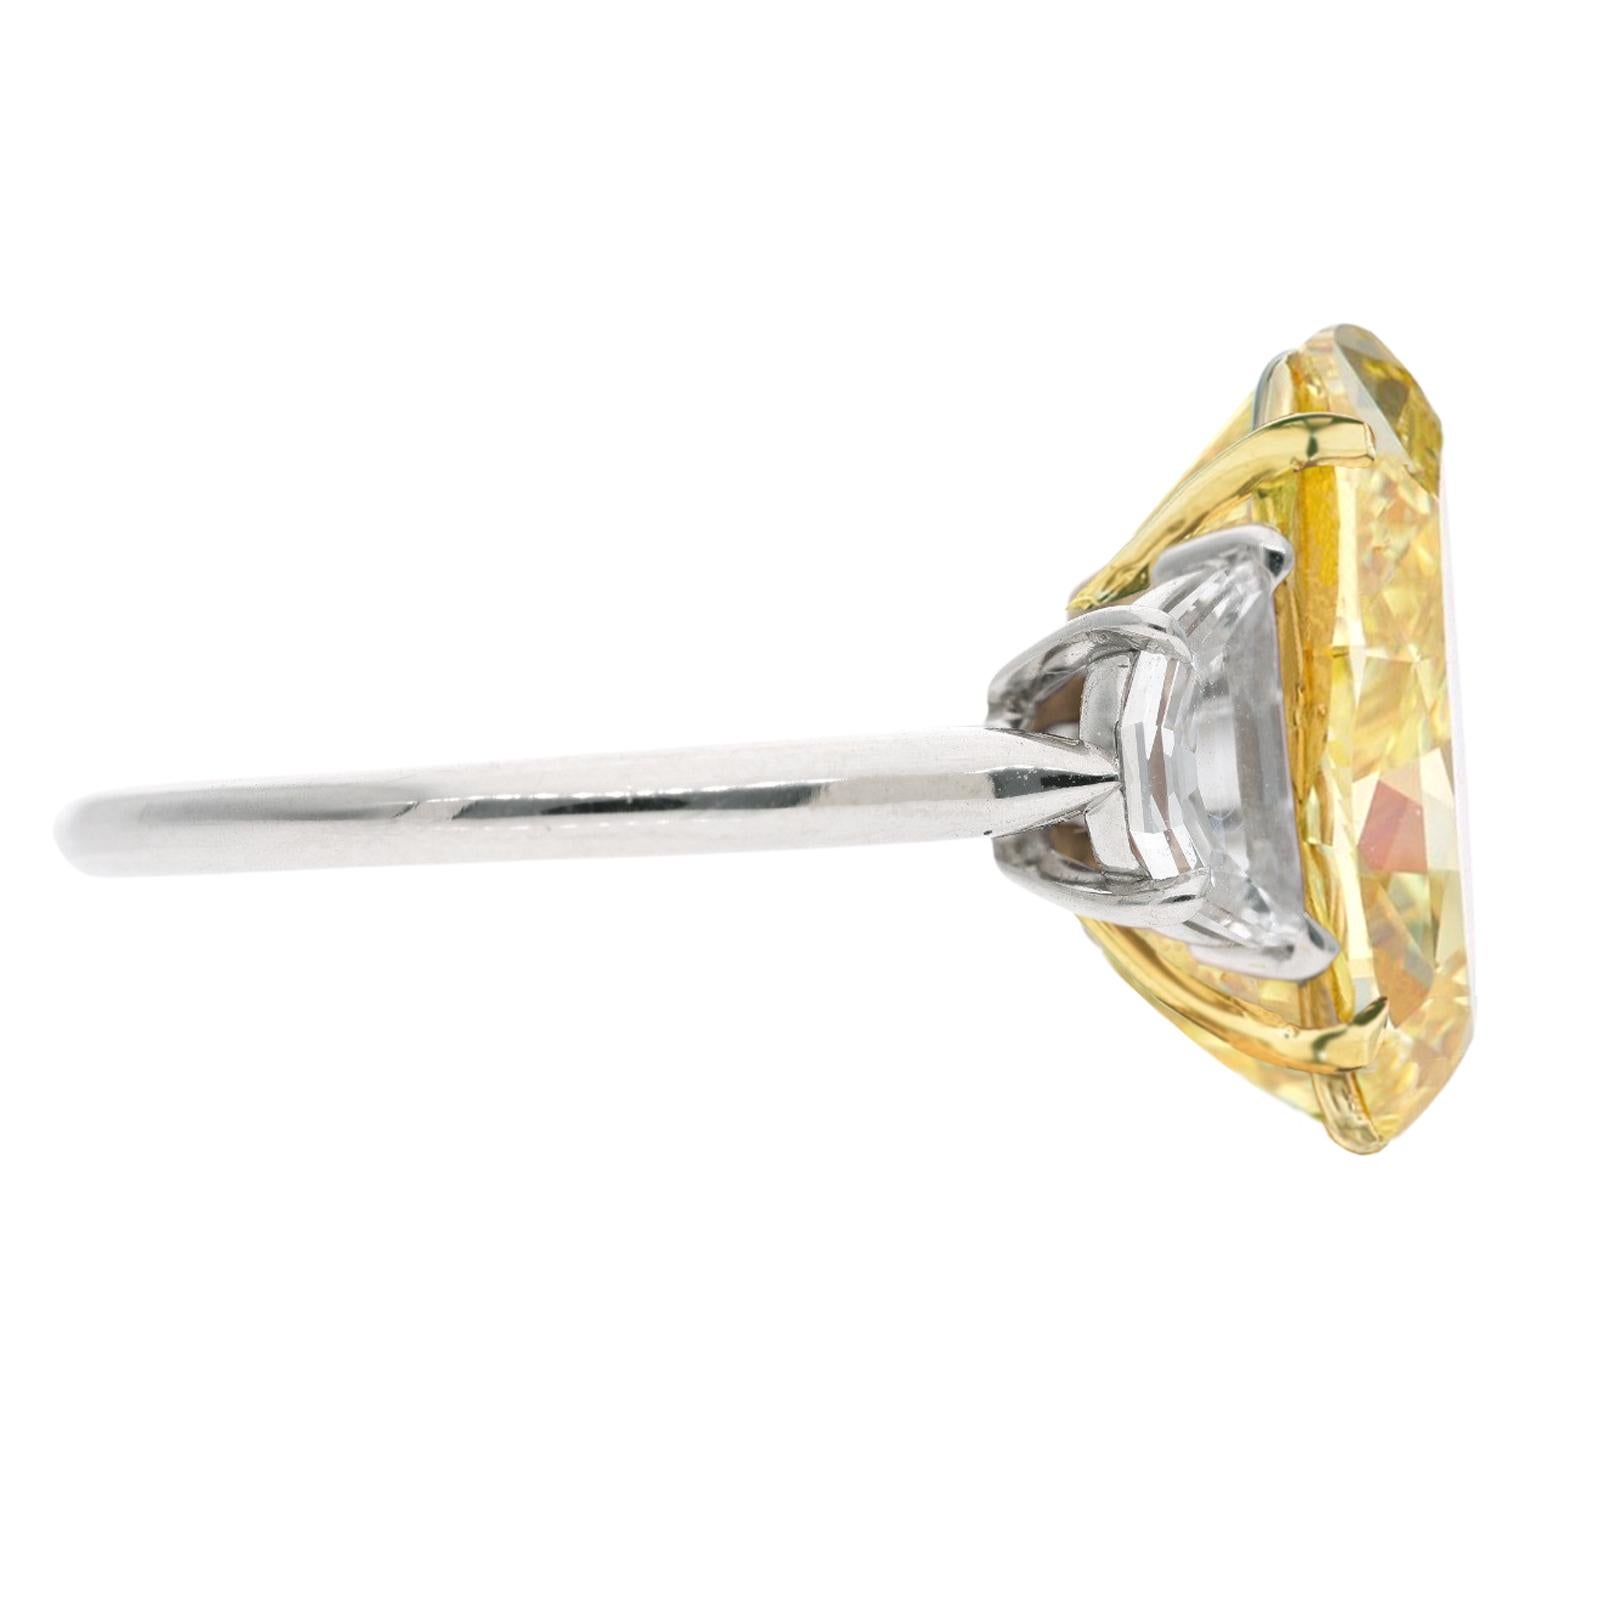 Ein exquisiter GIA-zertifizierter 5.68-Karat-Diamantring mit ovalem Schliff 

besetzt mit zwei schönen Diamanten im Halbmondschliff 

und in massivem Platin und 18er Gelbgold gefasst

der Ring ist in der Größe veränderbar

